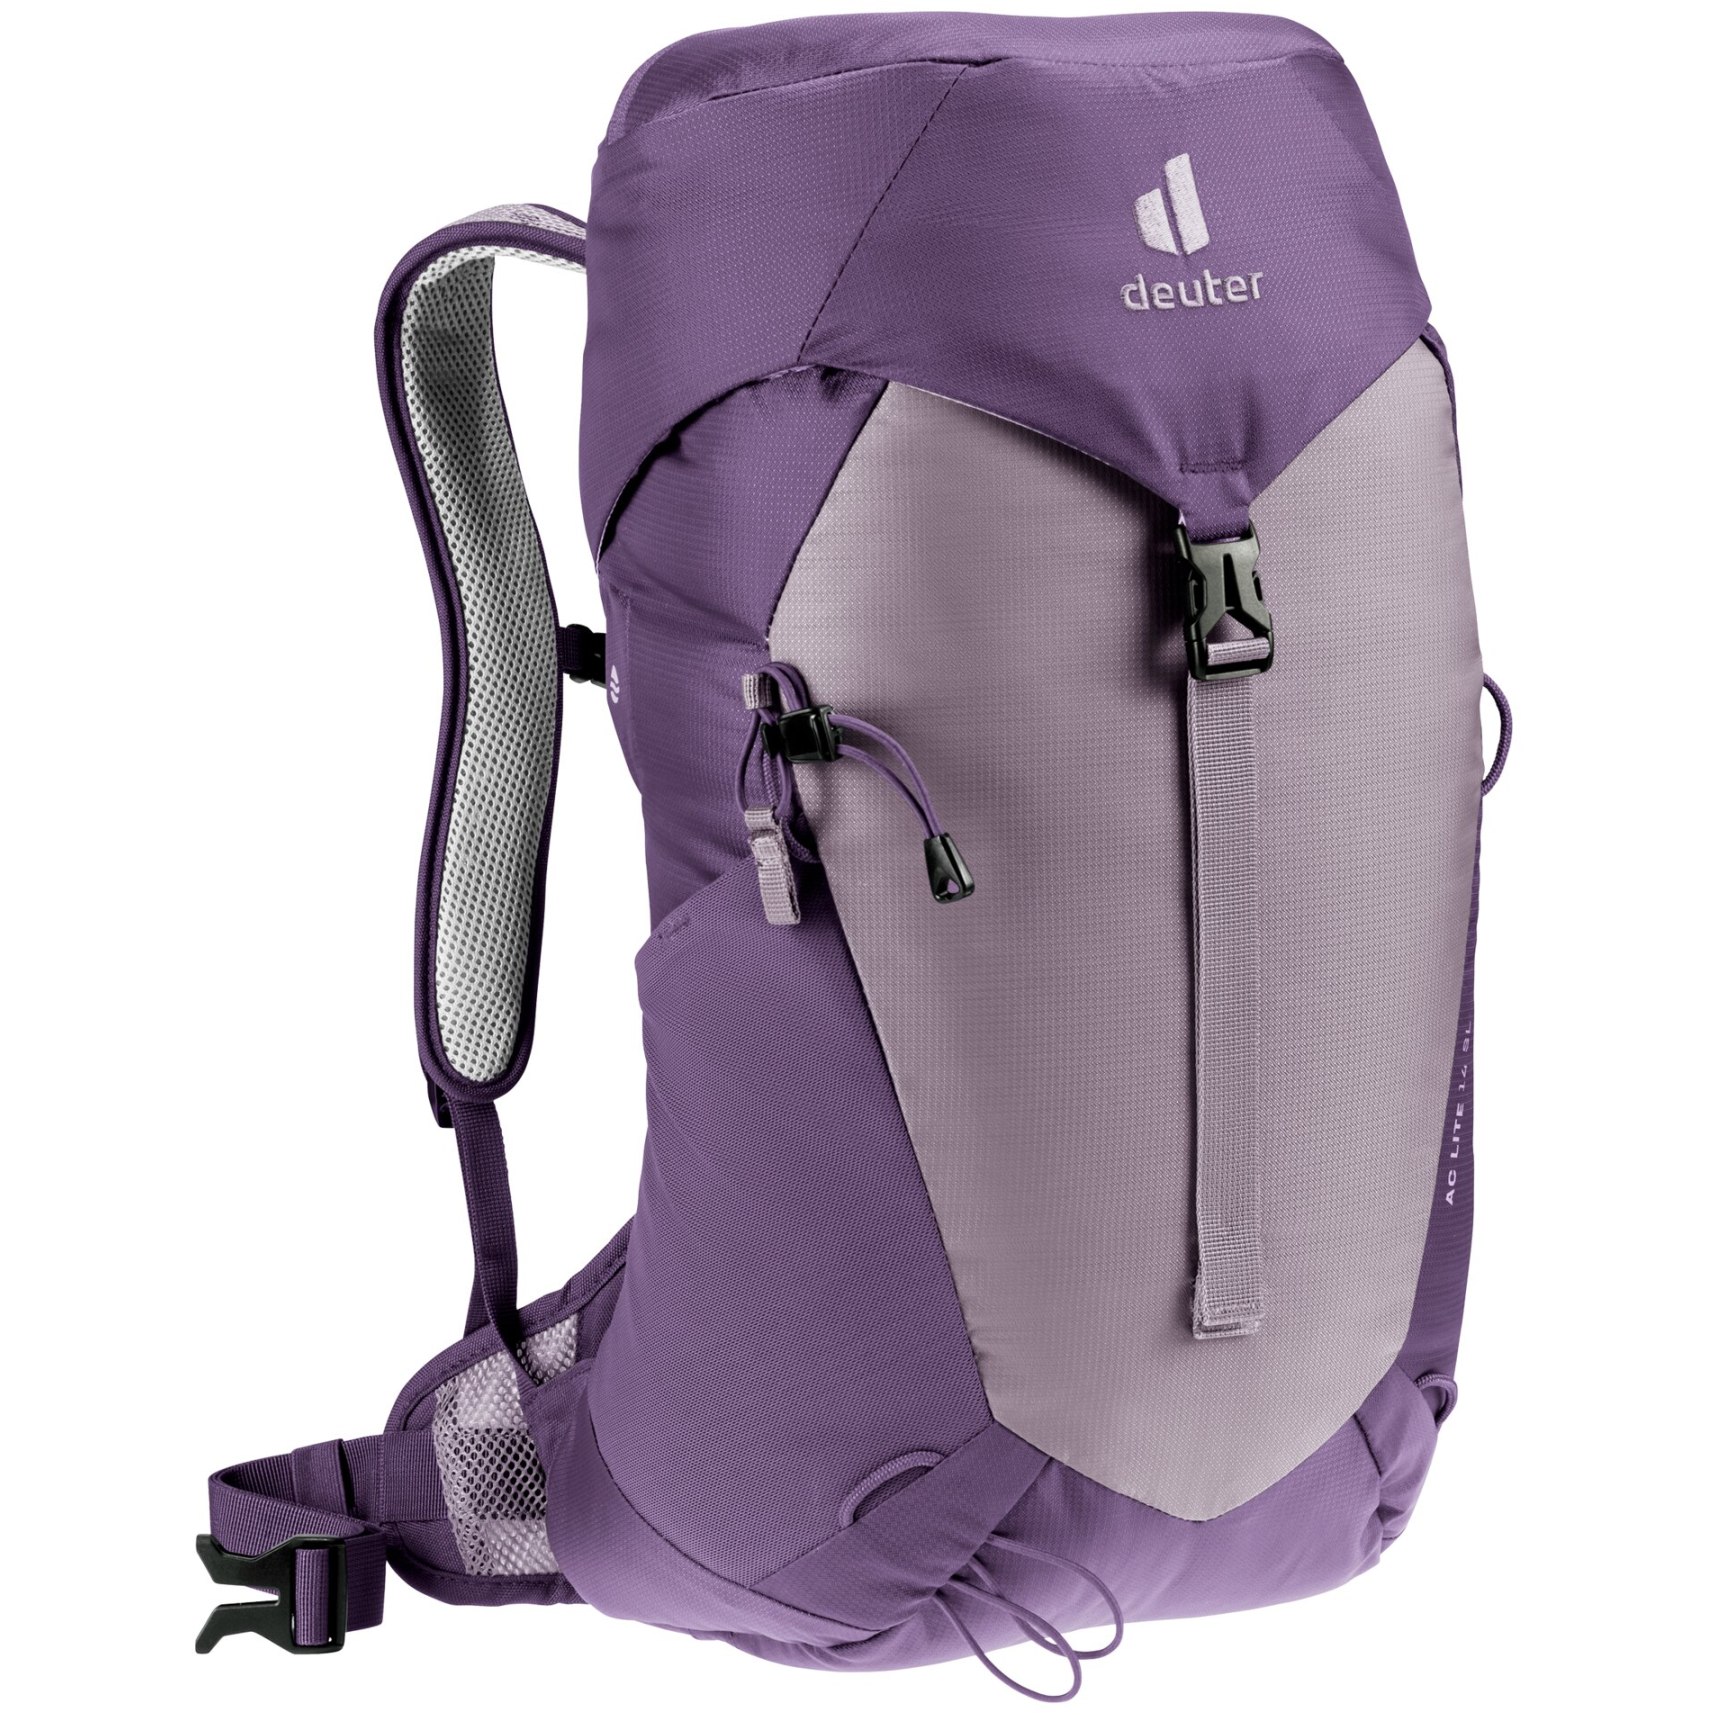 Produktbild von Deuter AC Lite 14 SL Damenrucksack - lavender-purple